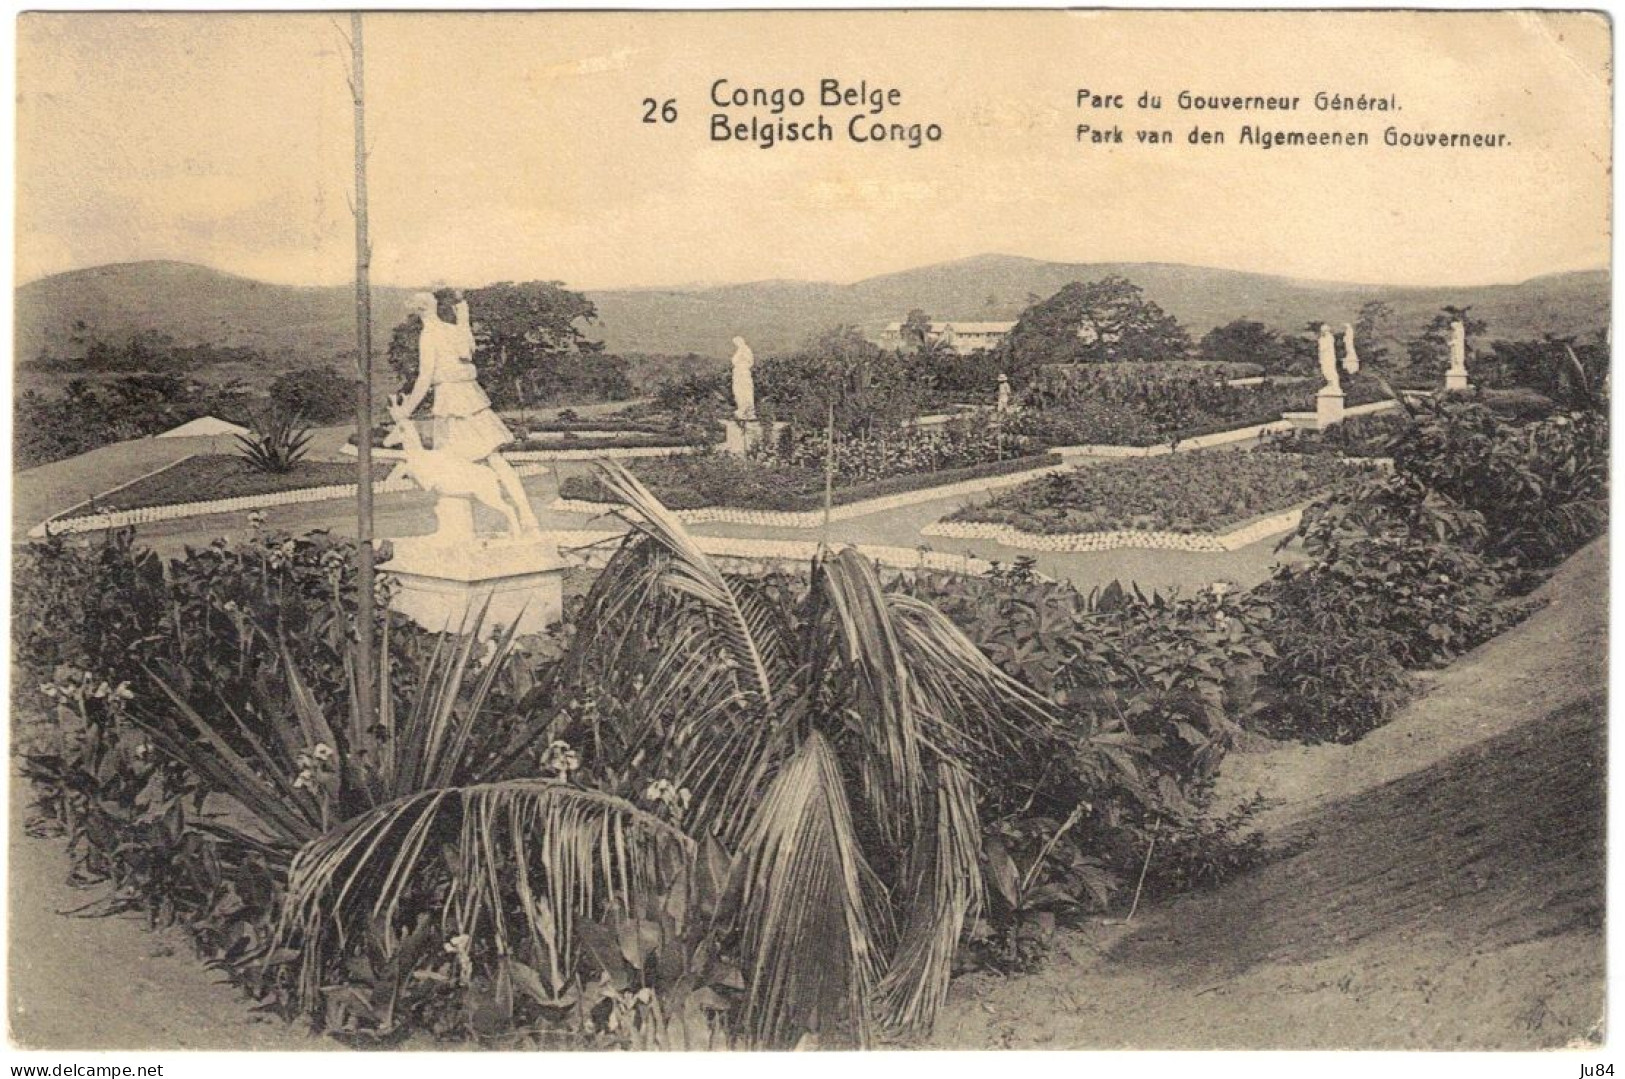 Afrique - Congo - Congo Belge - Parc Du Gouverneur Général - Entier Postal + Compélement D'affranchissement - 1921 - Lettres & Documents